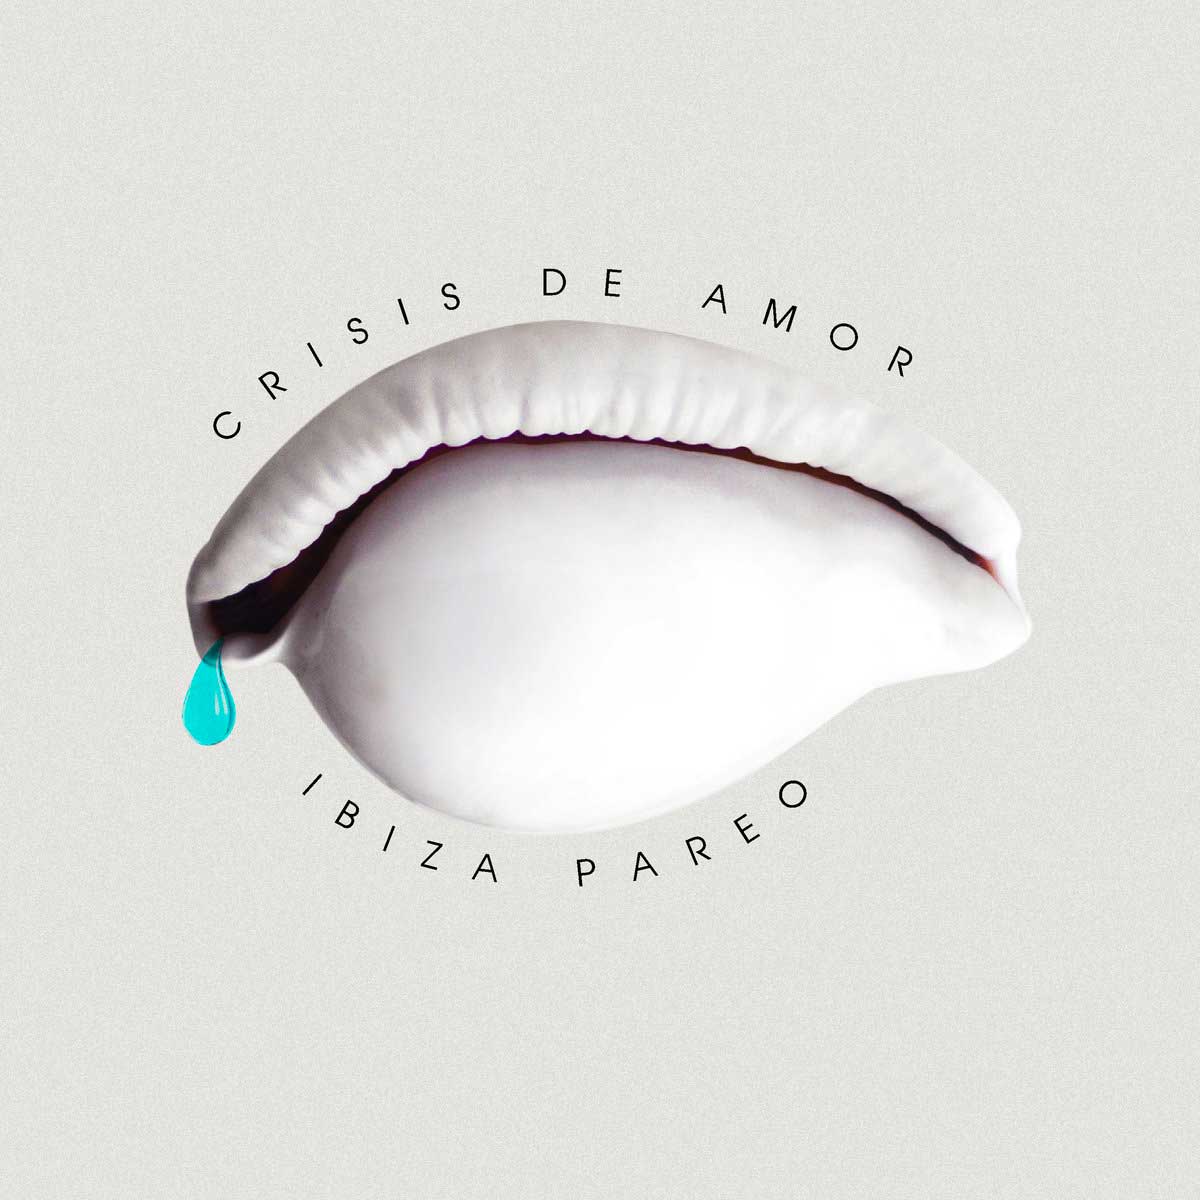 Tapa de "Crisis de amor", disco de Ibiza Pareo